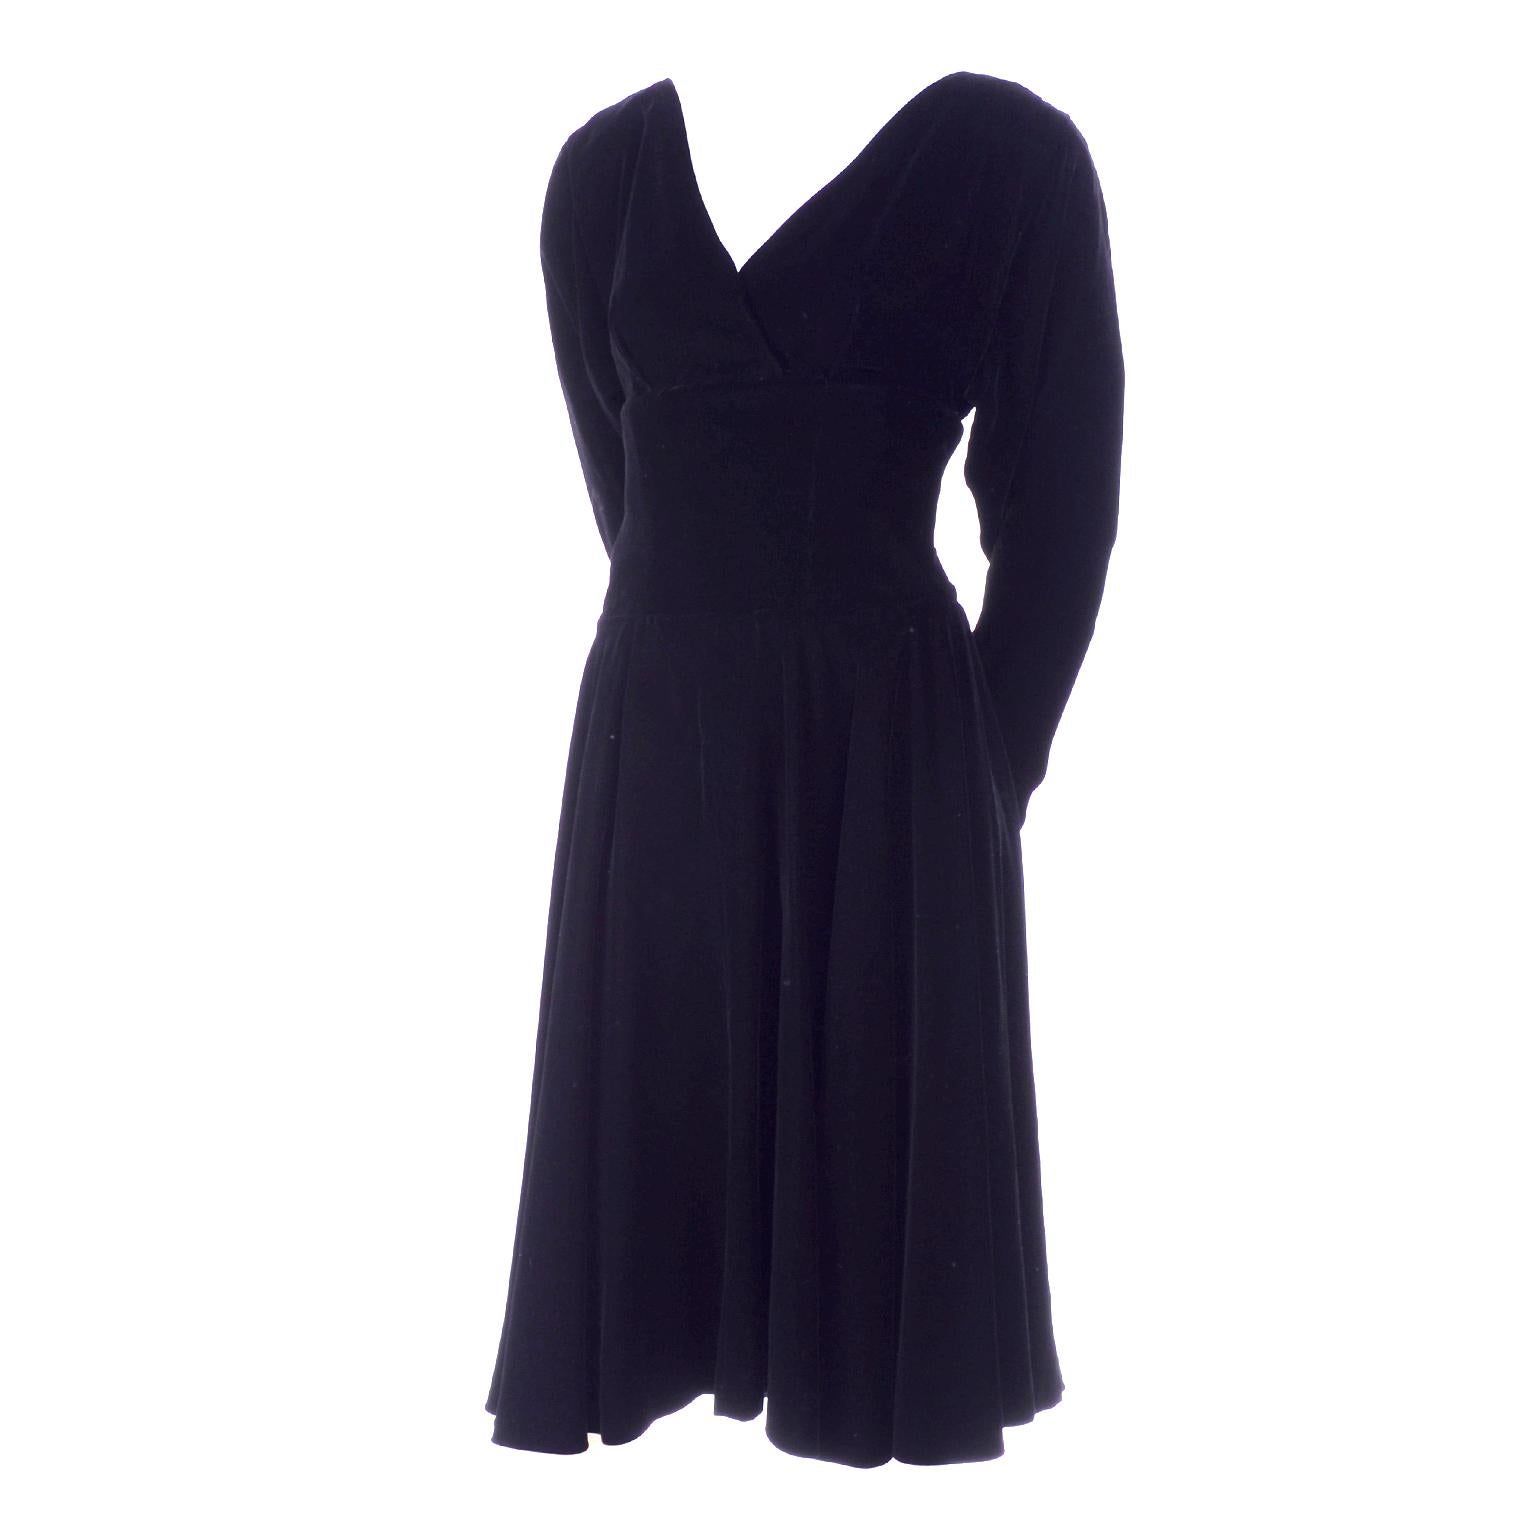 Voici une magnifique robe de soirée vintage en velours noir de Christian Dior avec une jupe ample.  La robe est munie de boutons et d'une fermeture à glissière qui commence à la taille dans le dos.  Le corsage croisé est au-dessus de la taille